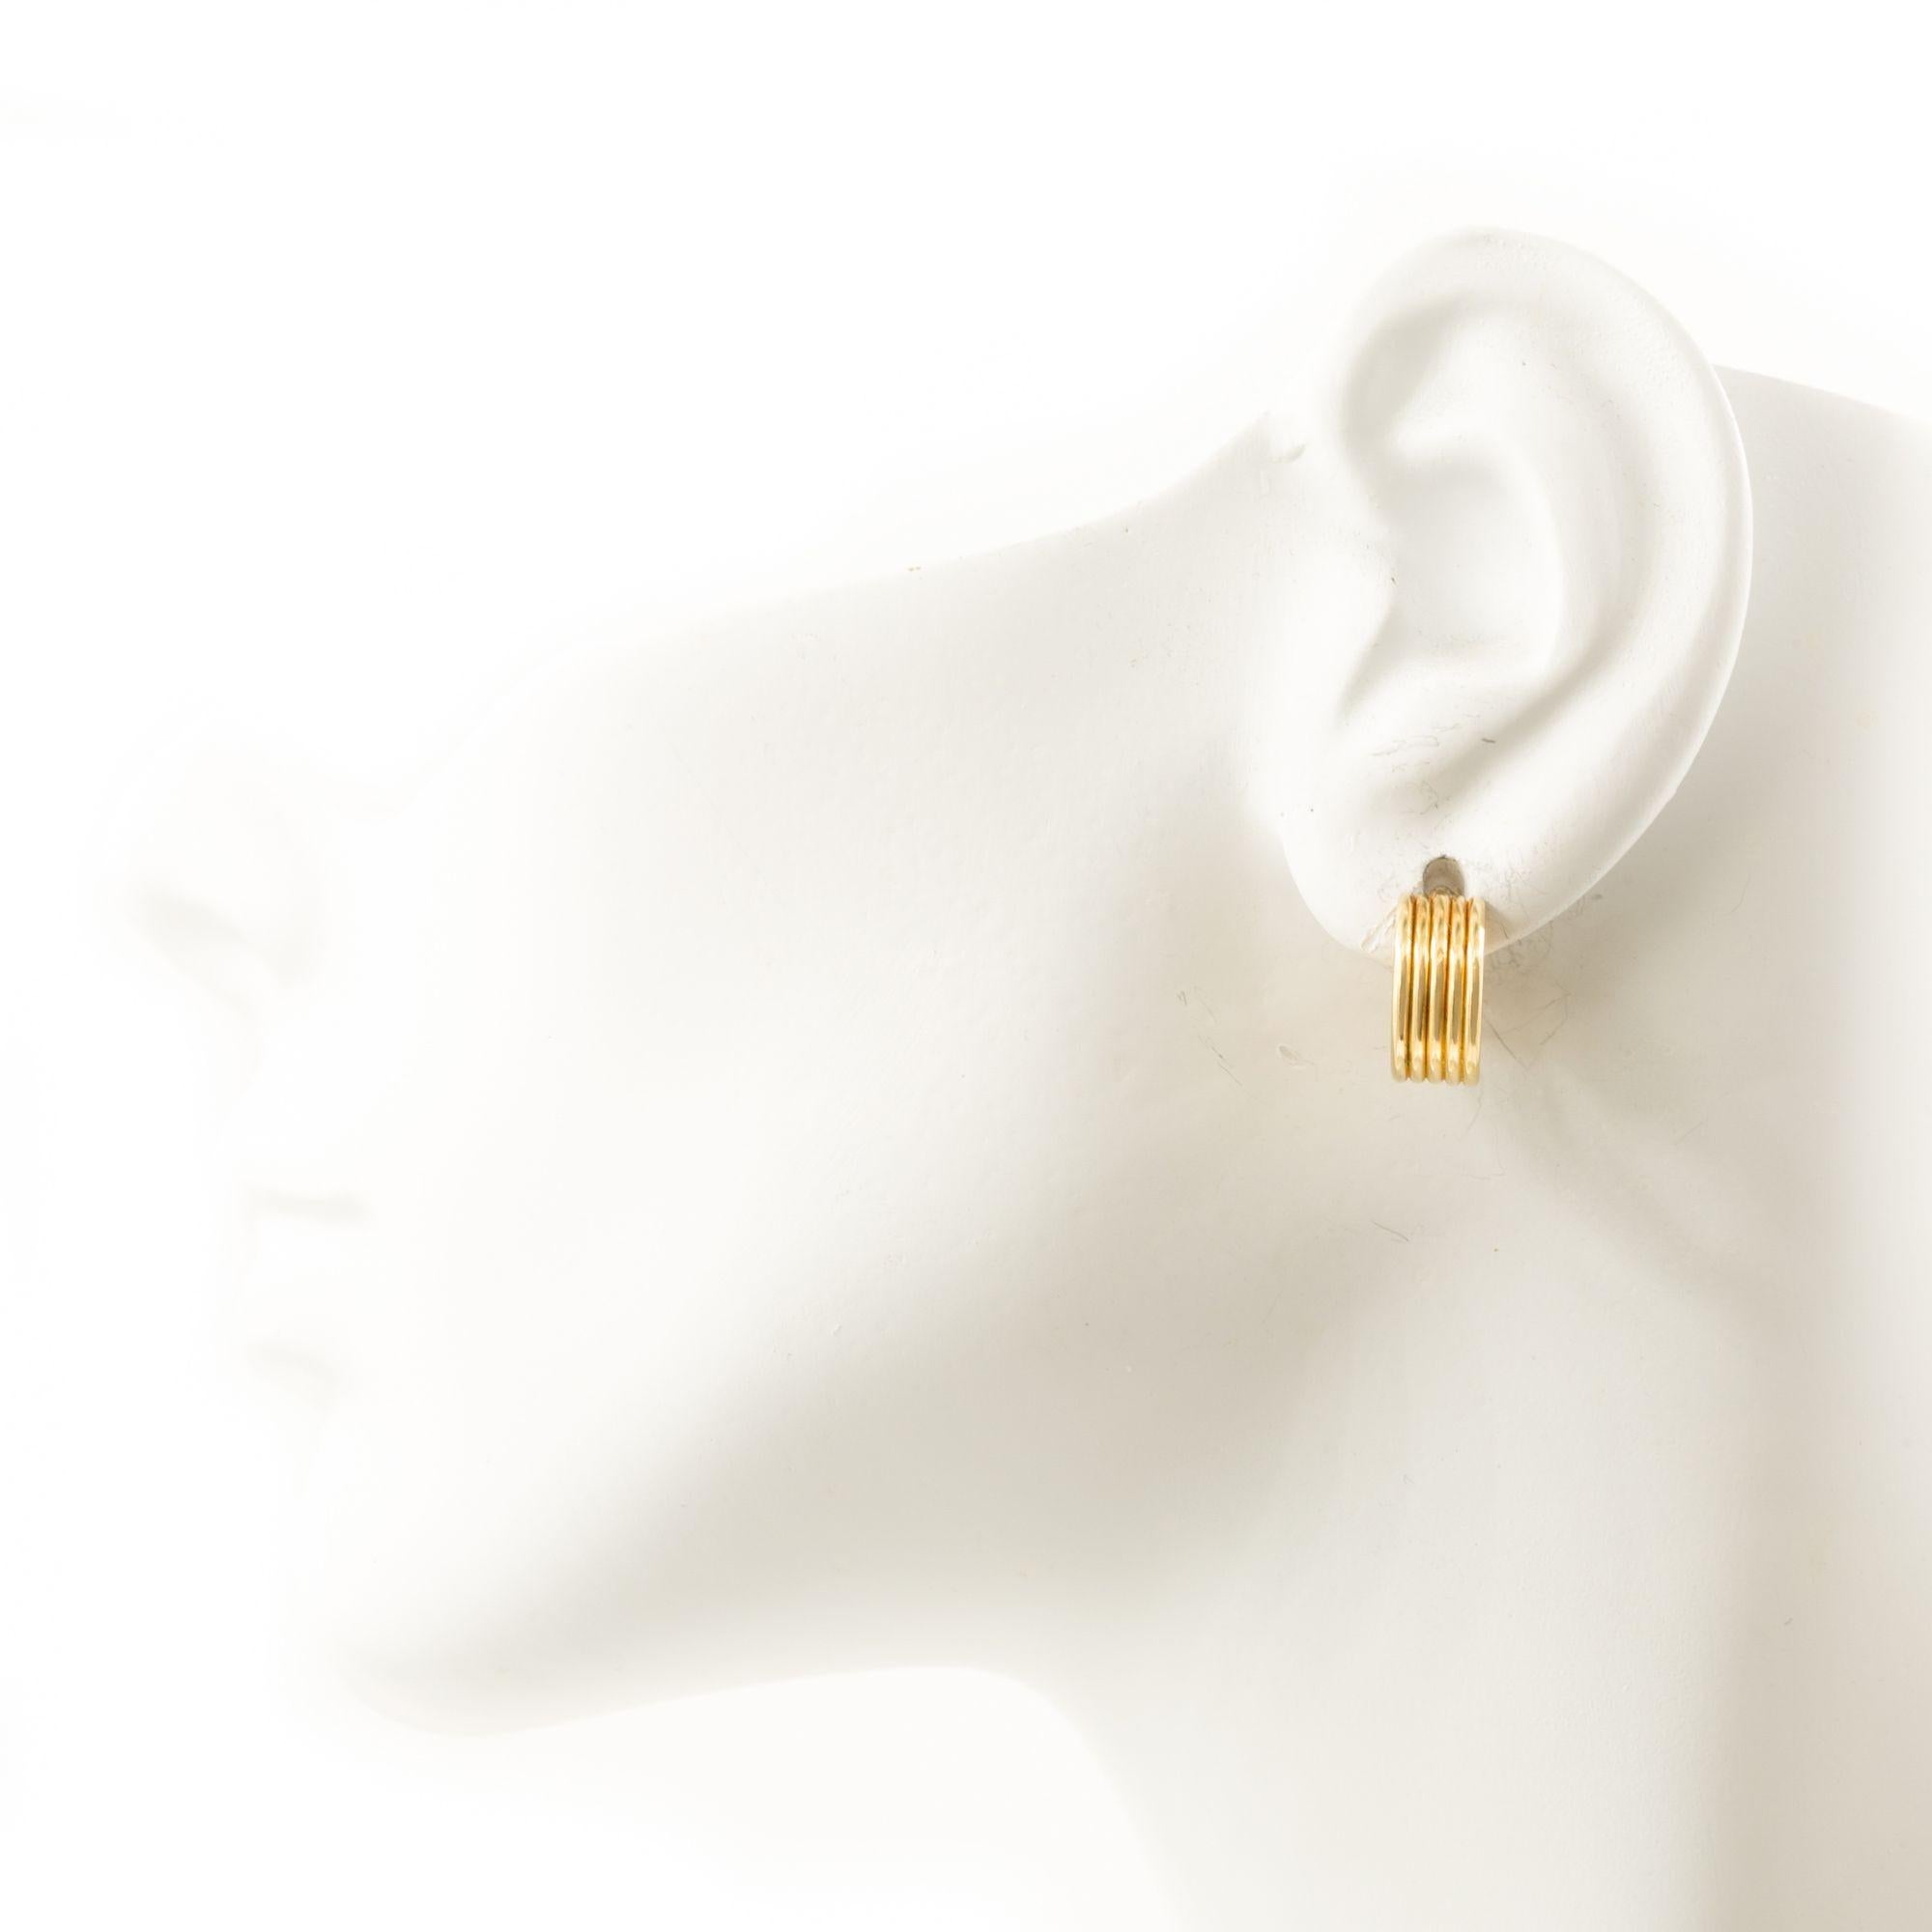 Paire de boucles d'oreilles Huggie en or jaune 14K à côtes
Article # C104604

Paire de boucles d'oreilles en or jaune 14 carats à motif nervuré. Ces boucles d'oreilles se caractérisent par leur petite forme en anneau qui épouse le lobe de l'oreille.